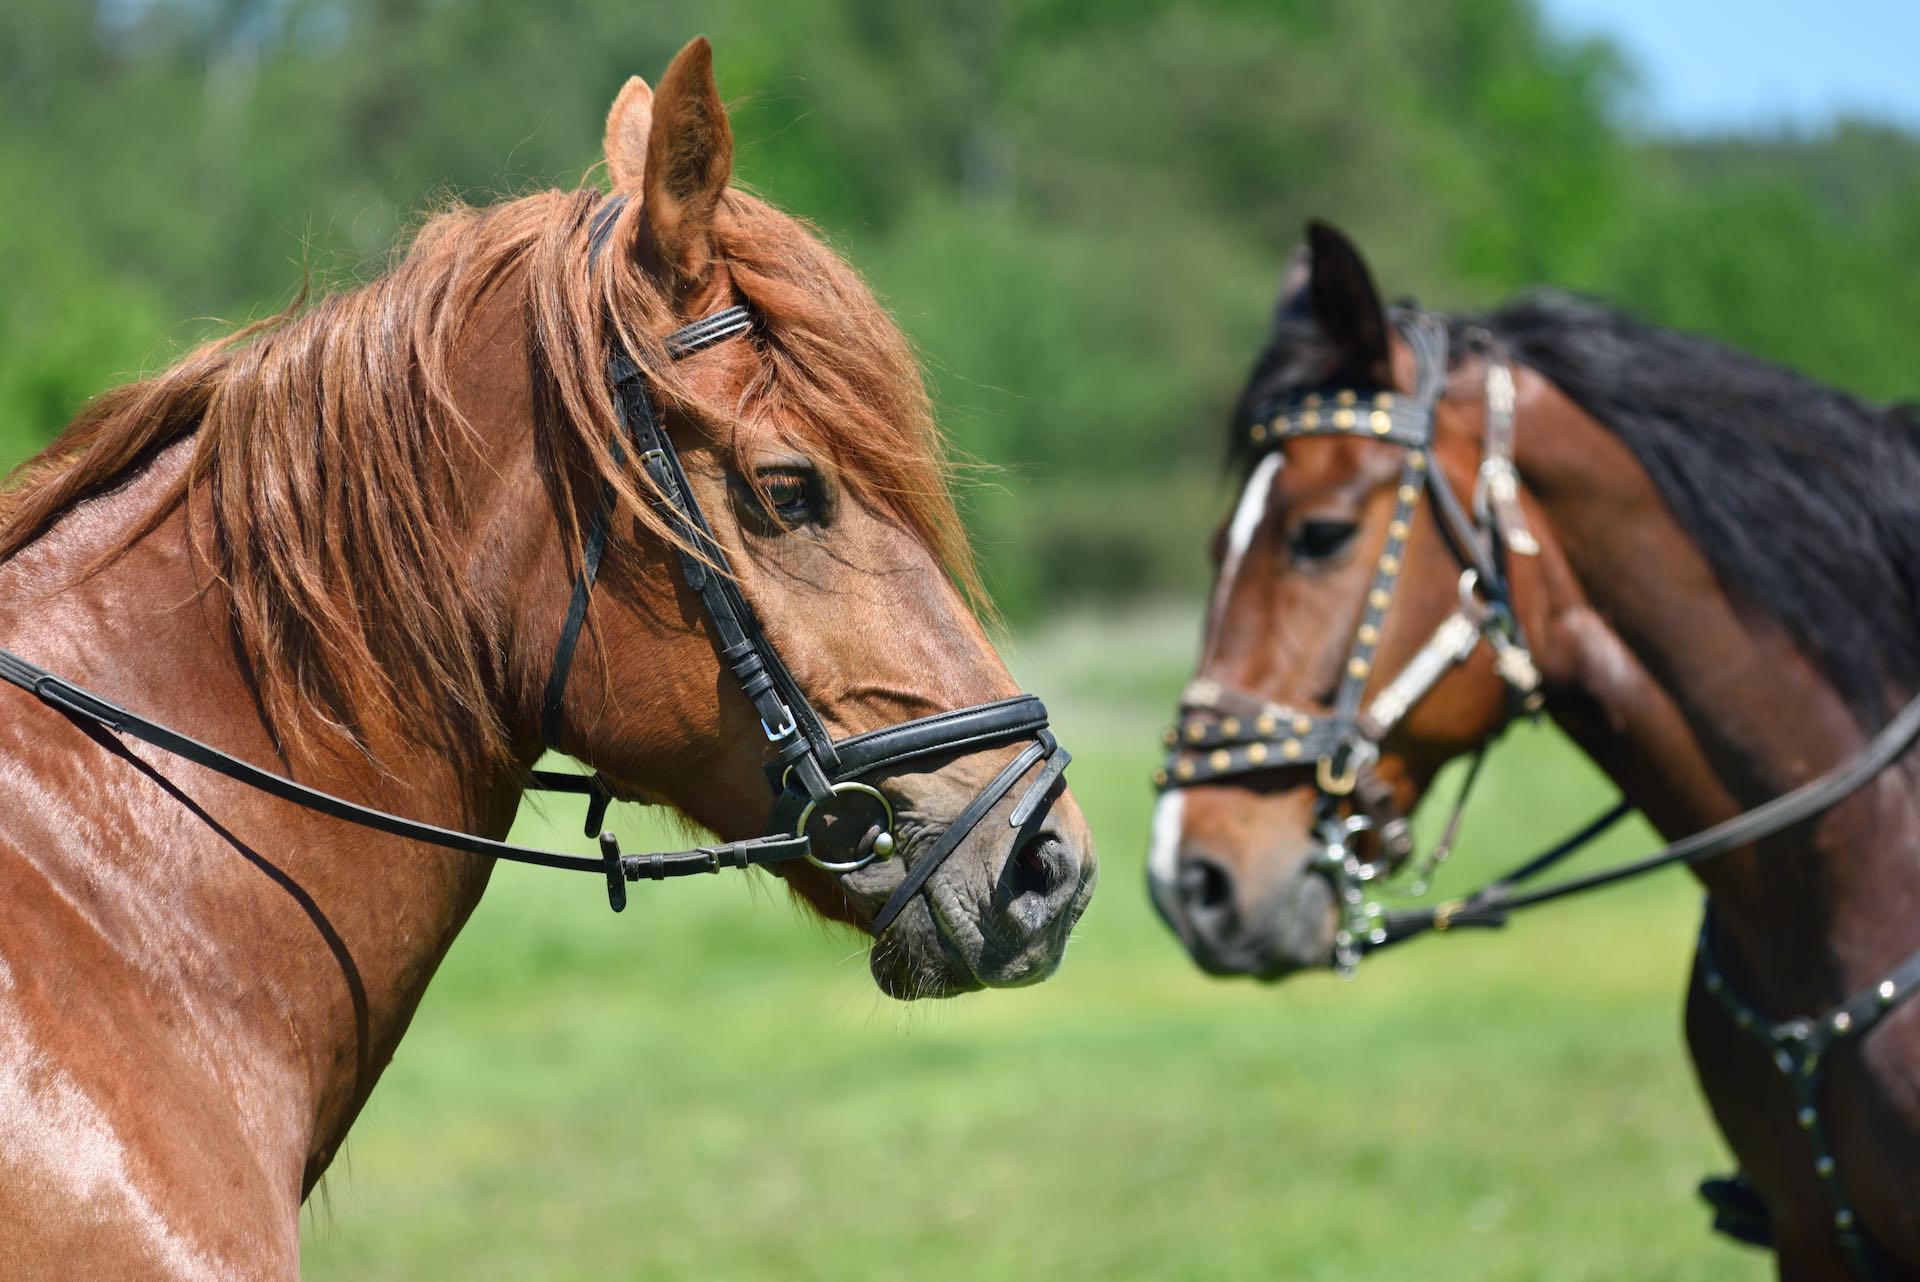 portrait-of-two-horses-2022-02-02-03-48-18-utc_copy.jpg